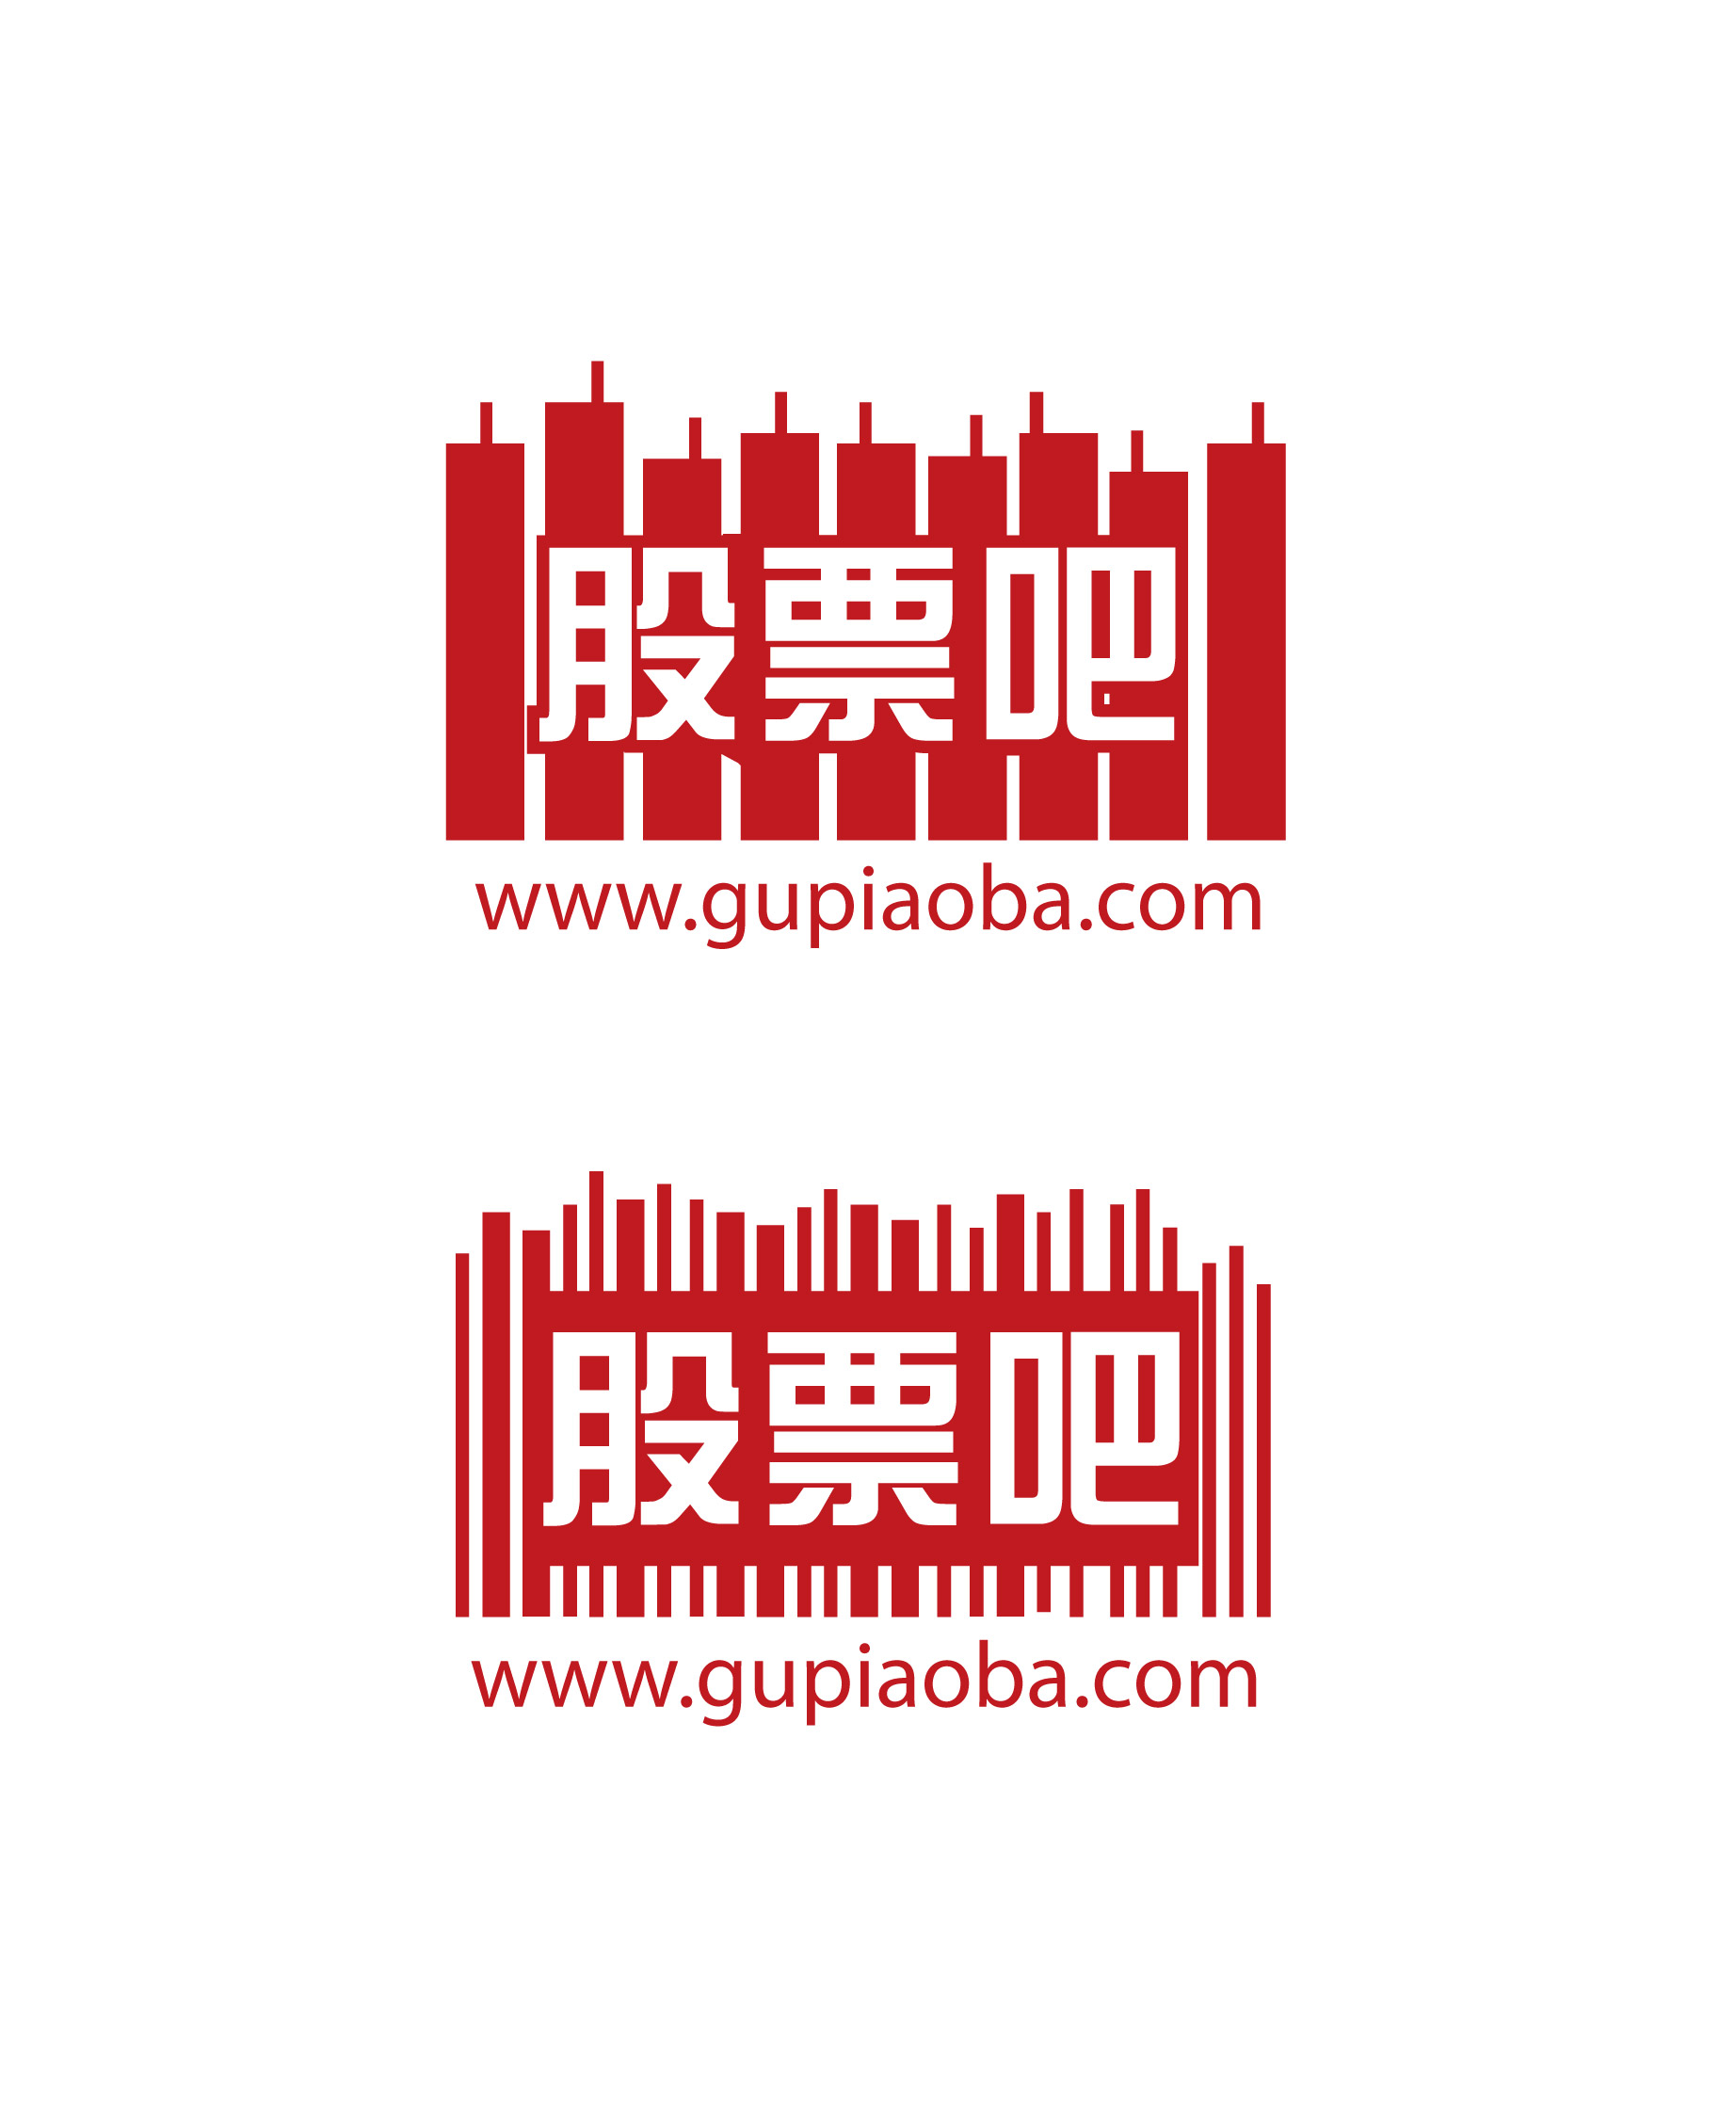 gupiaoba.com(股票吧)logo设计